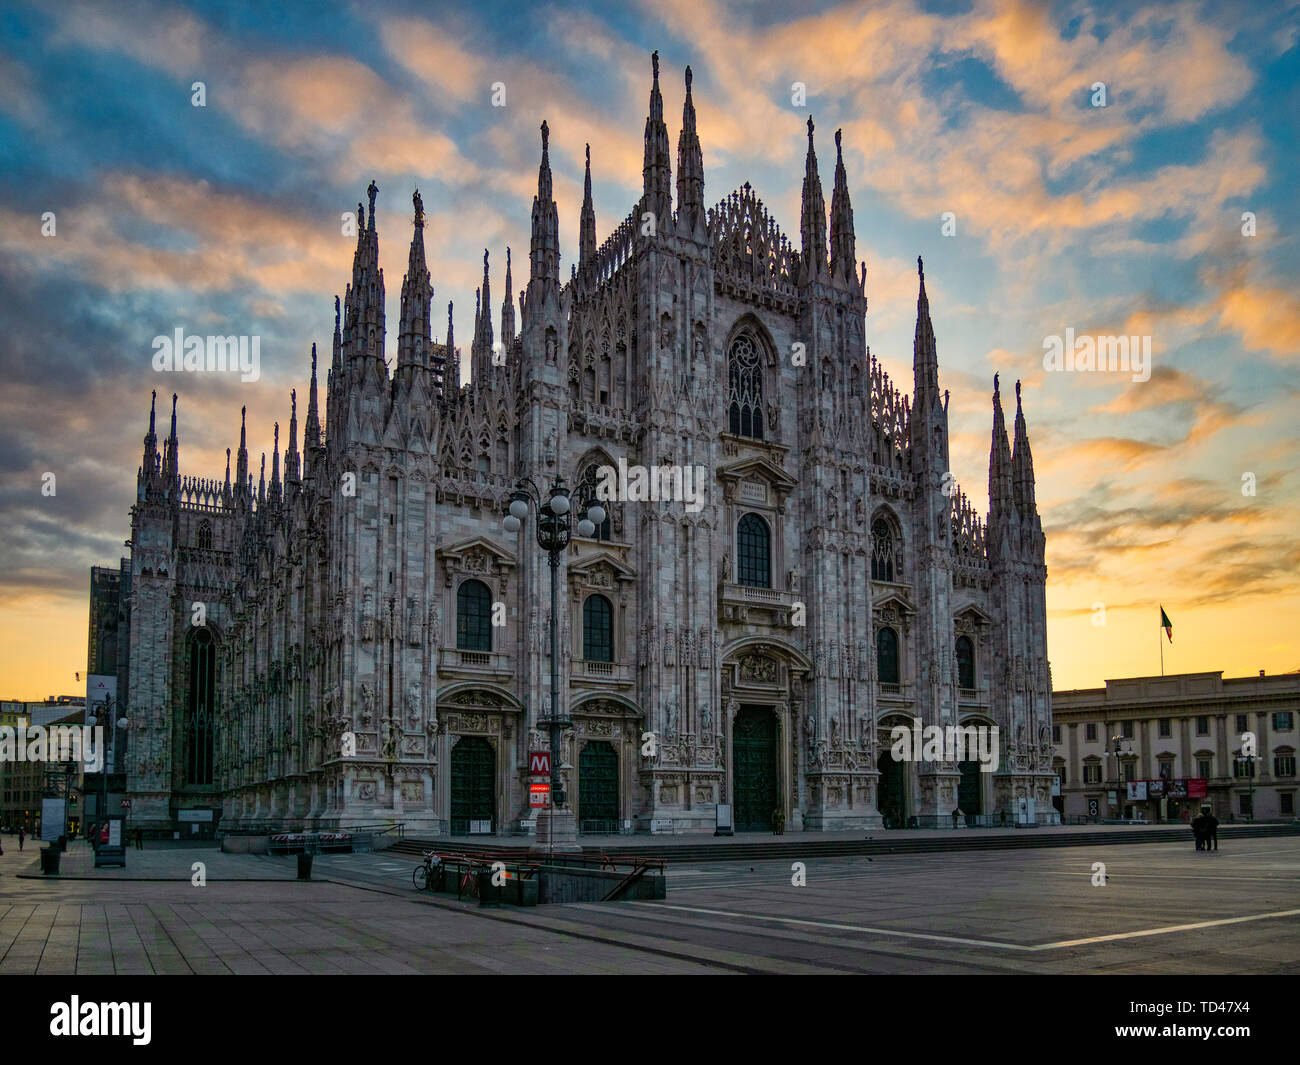 Sainte Marie de nativité cathédrale (Duomo), au lever du soleil, Milan, Lombardie, Italie, Europe Banque D'Images